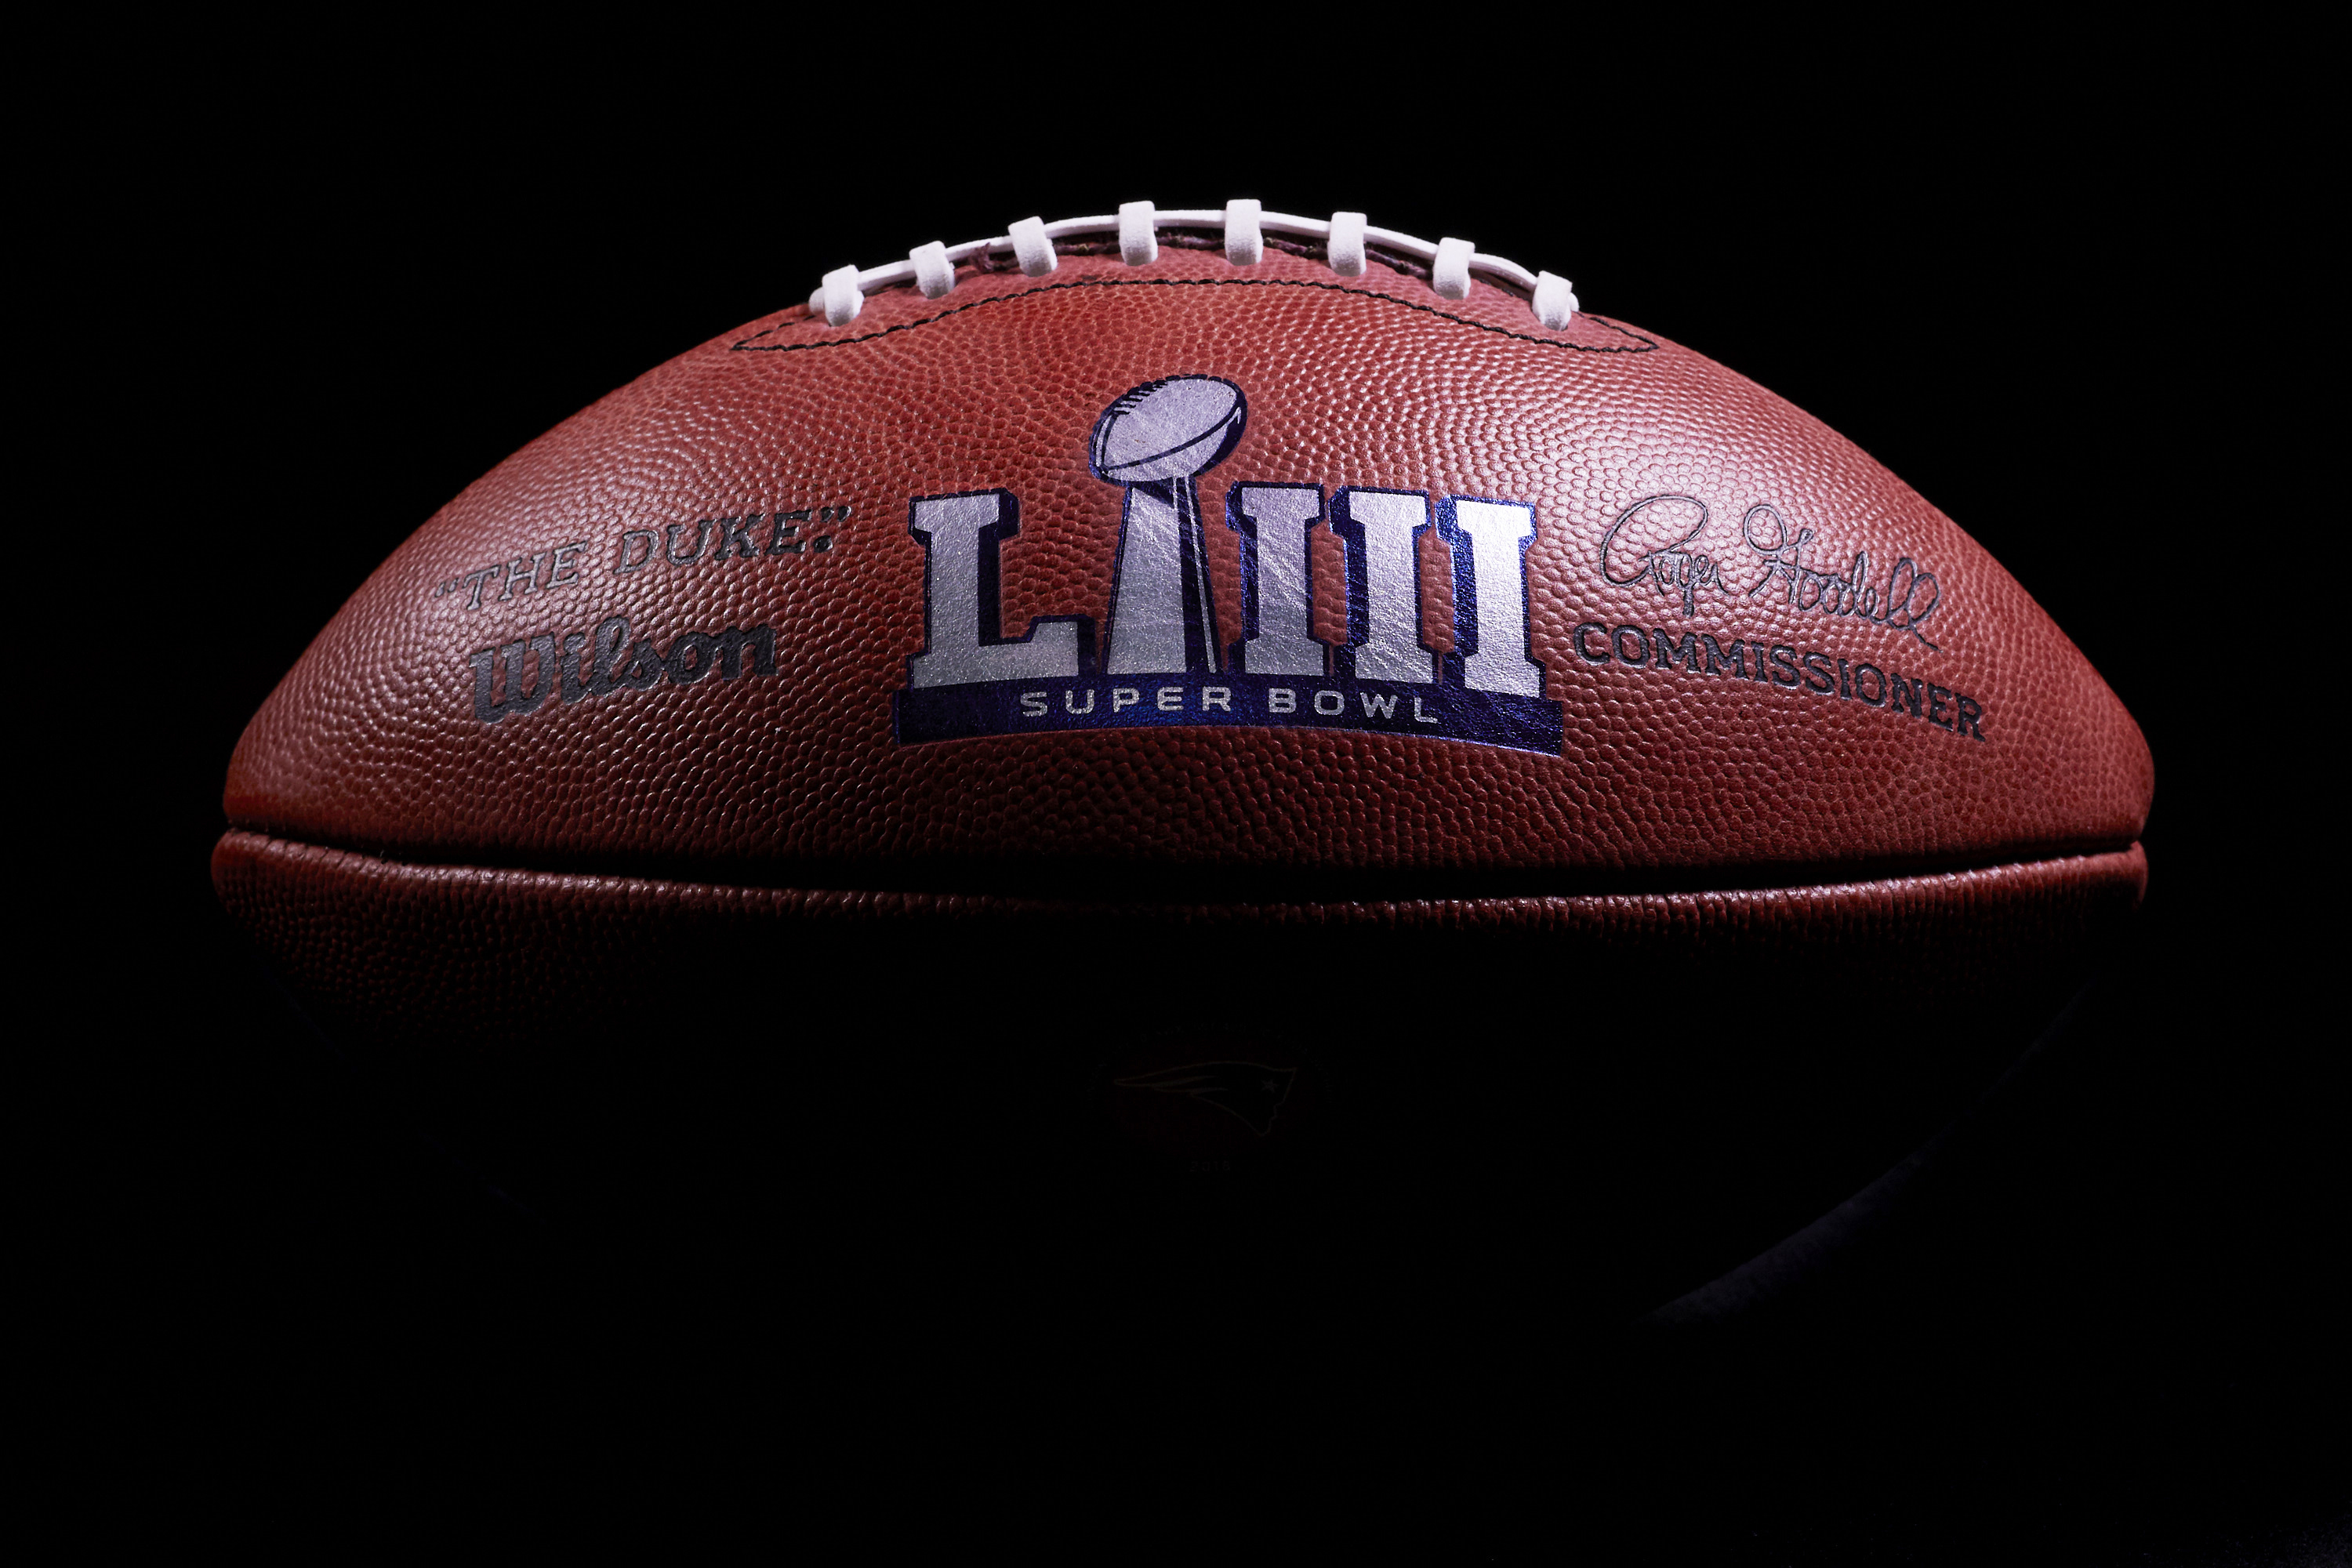 ¿Quién ganará el Super Bowl LIII? Vota aquí